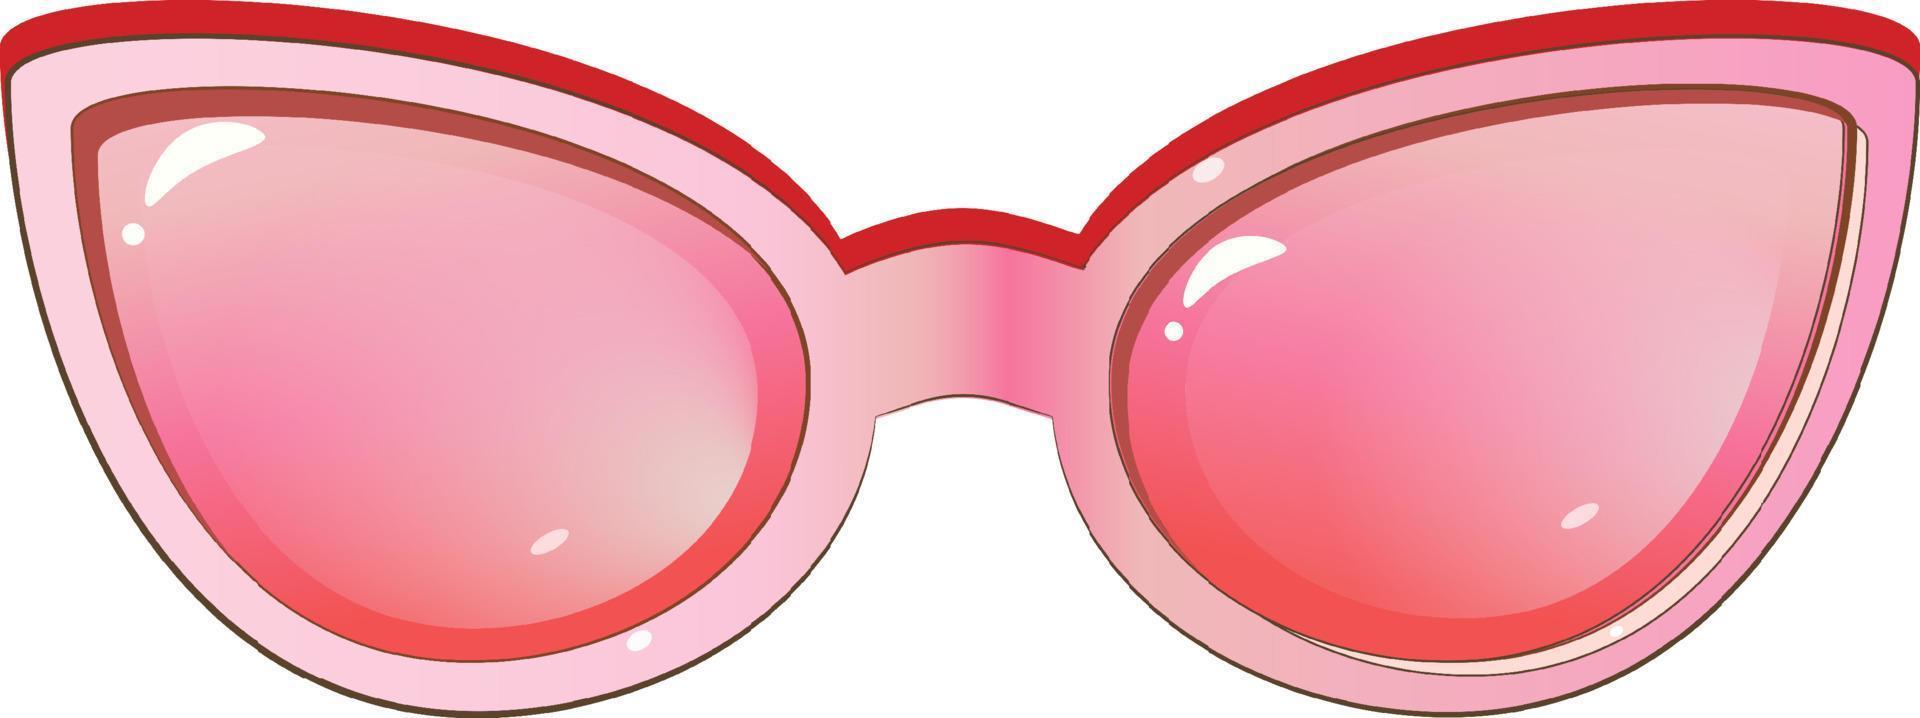 rosa trendige Sonnenbrillen-Symbol im Cartoon-Stil isoliert auf weißem Hintergrund. Stock-Vektor-Illustration. vektor